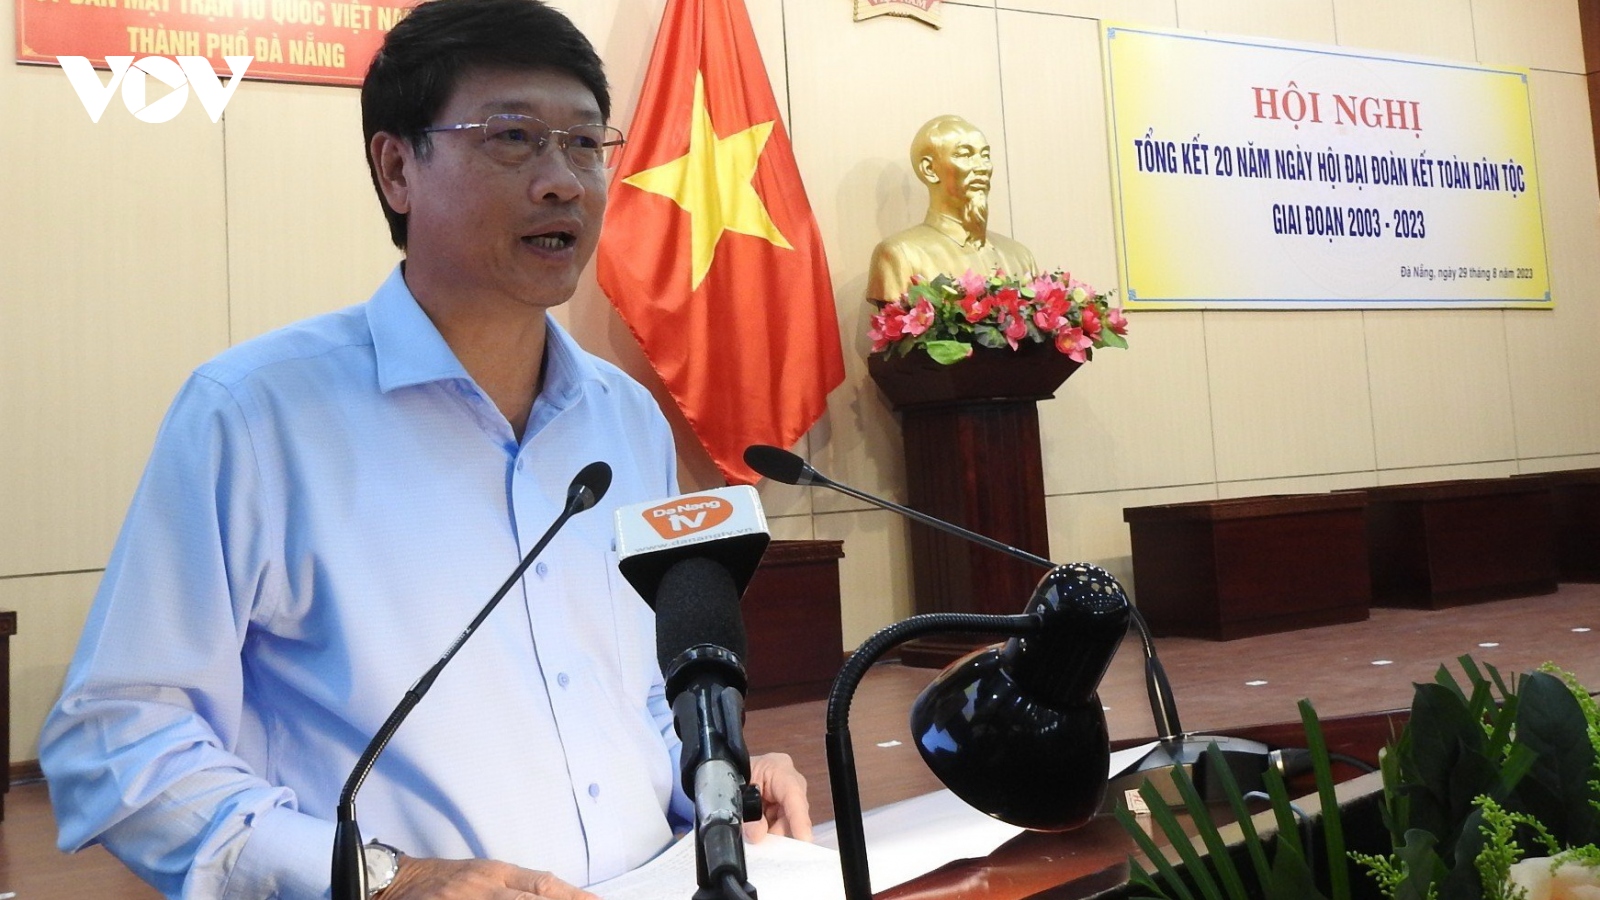 Đà Nẵng ủng hộ 7,3 tỷ đồng giúp tỉnh Điện Biên xây nhà Đại đoàn kết